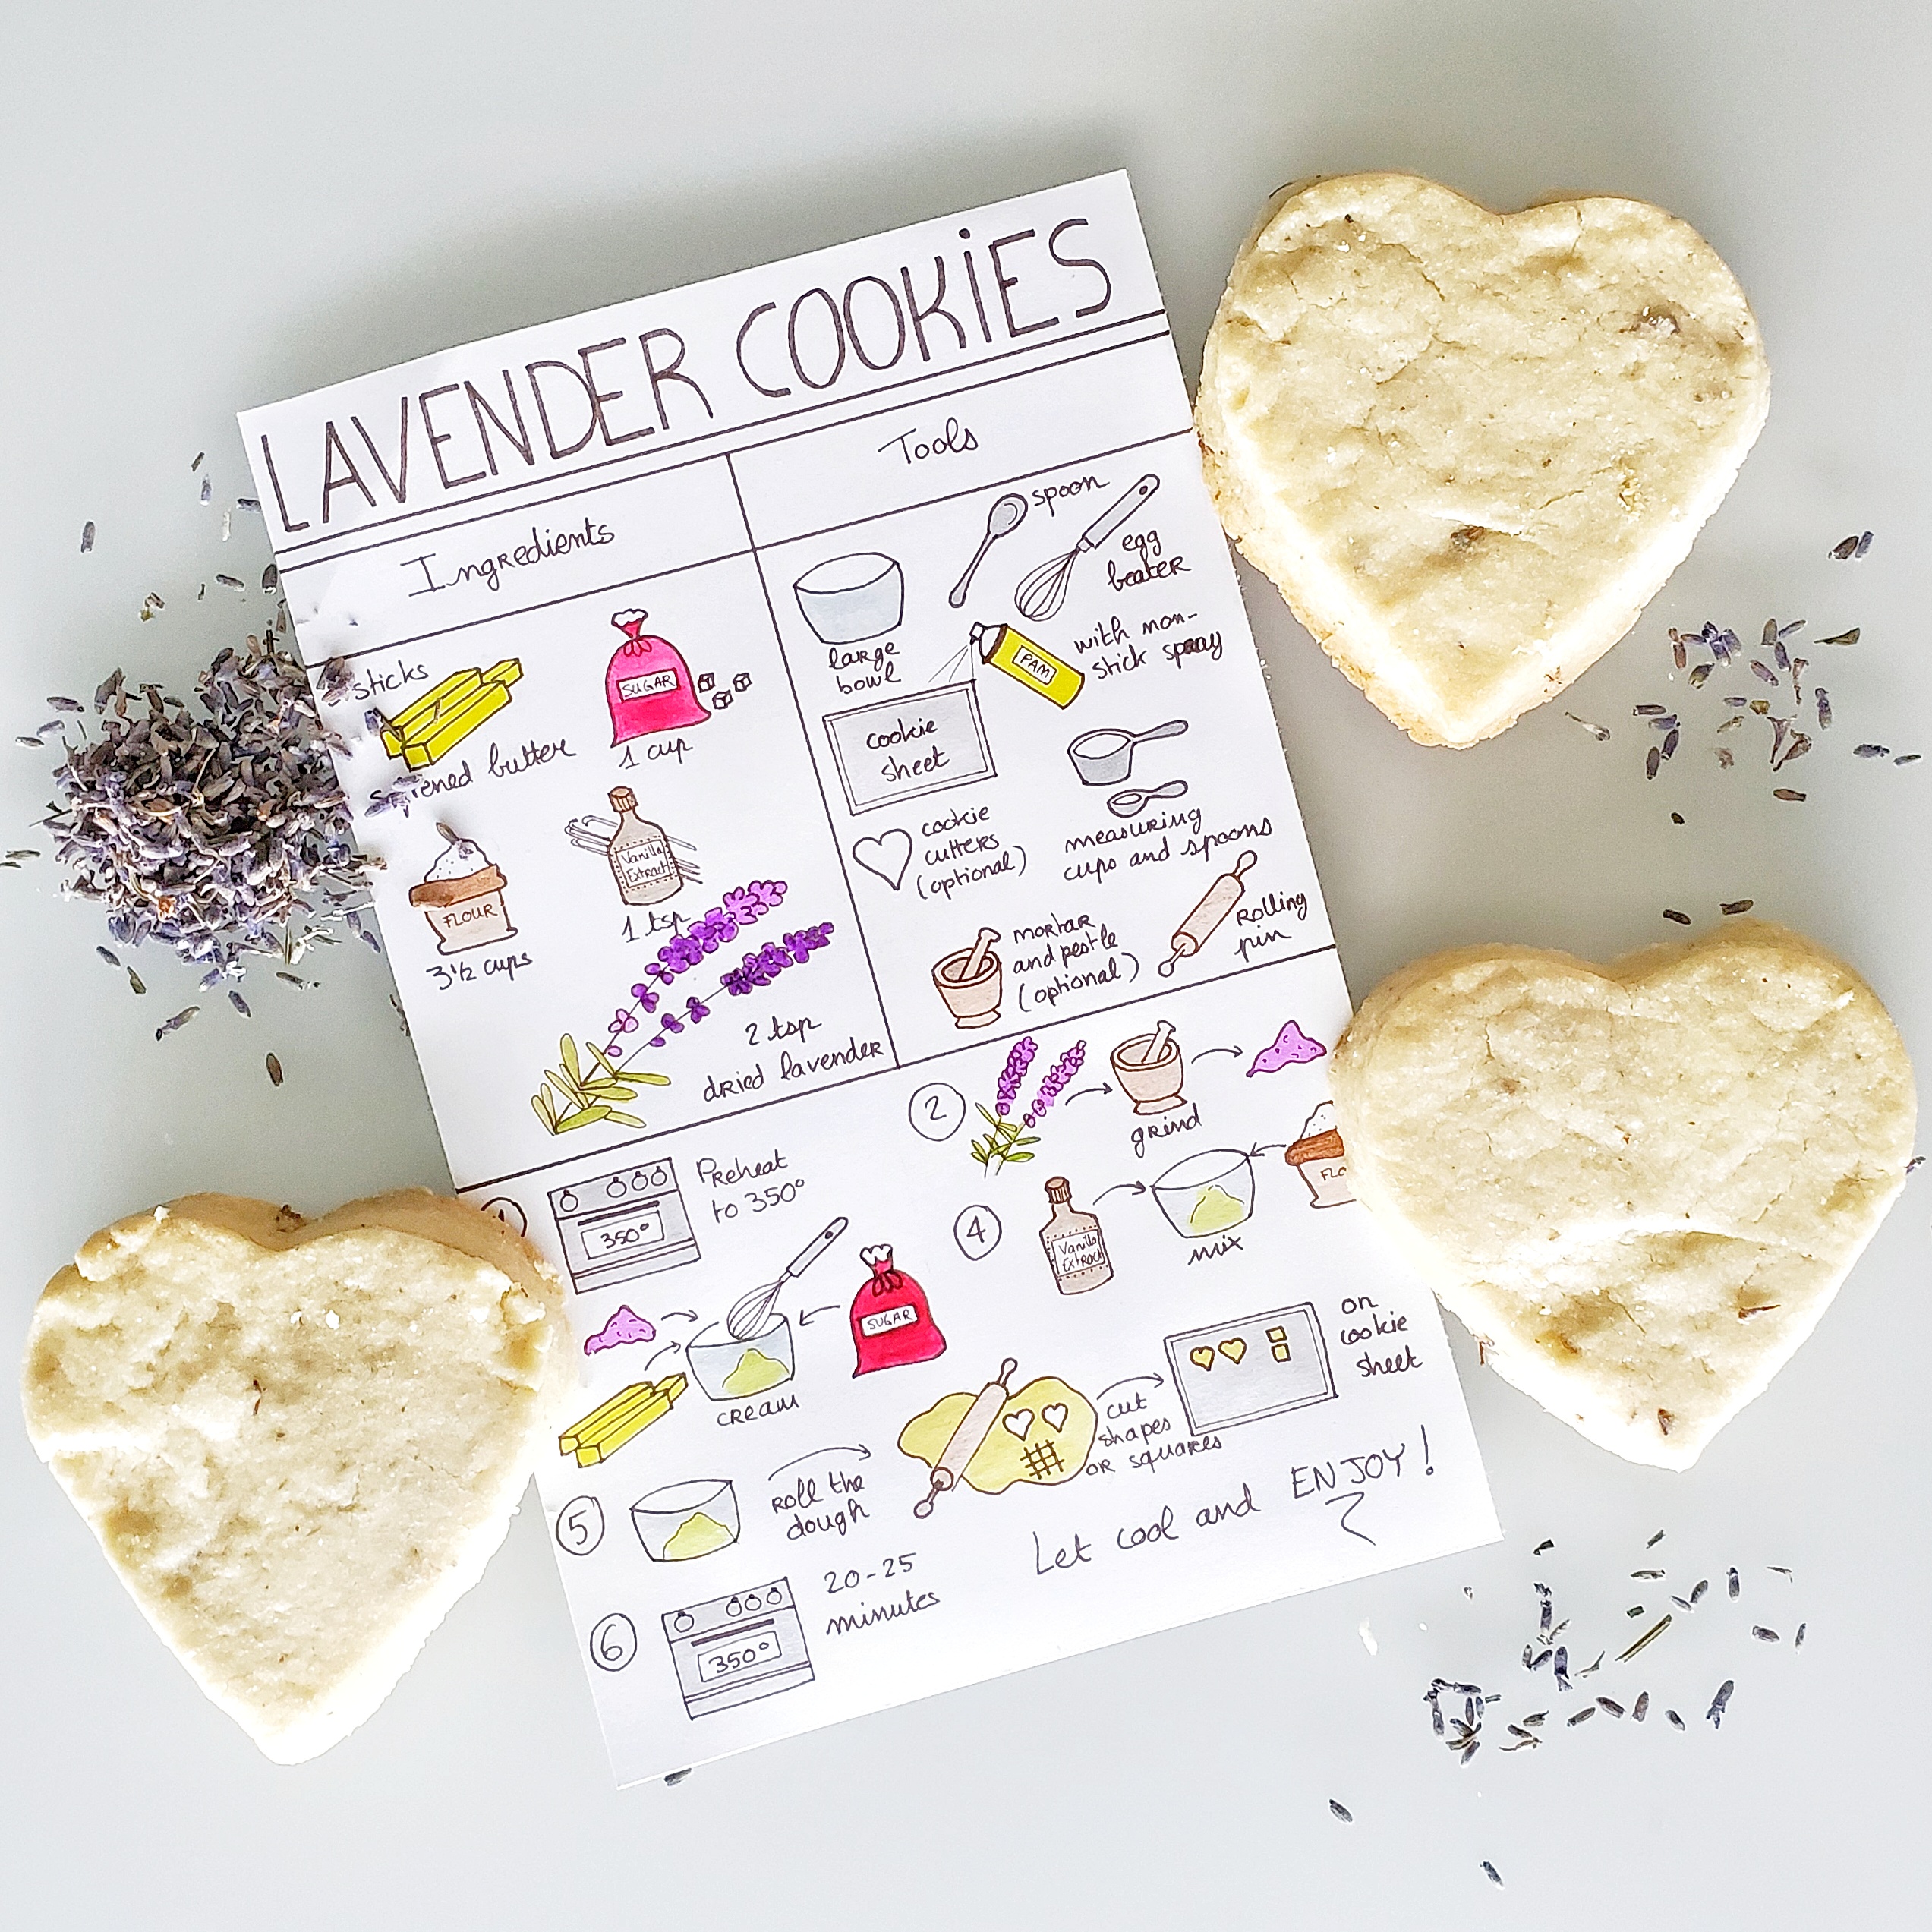 463-lavender-cookies.jpg